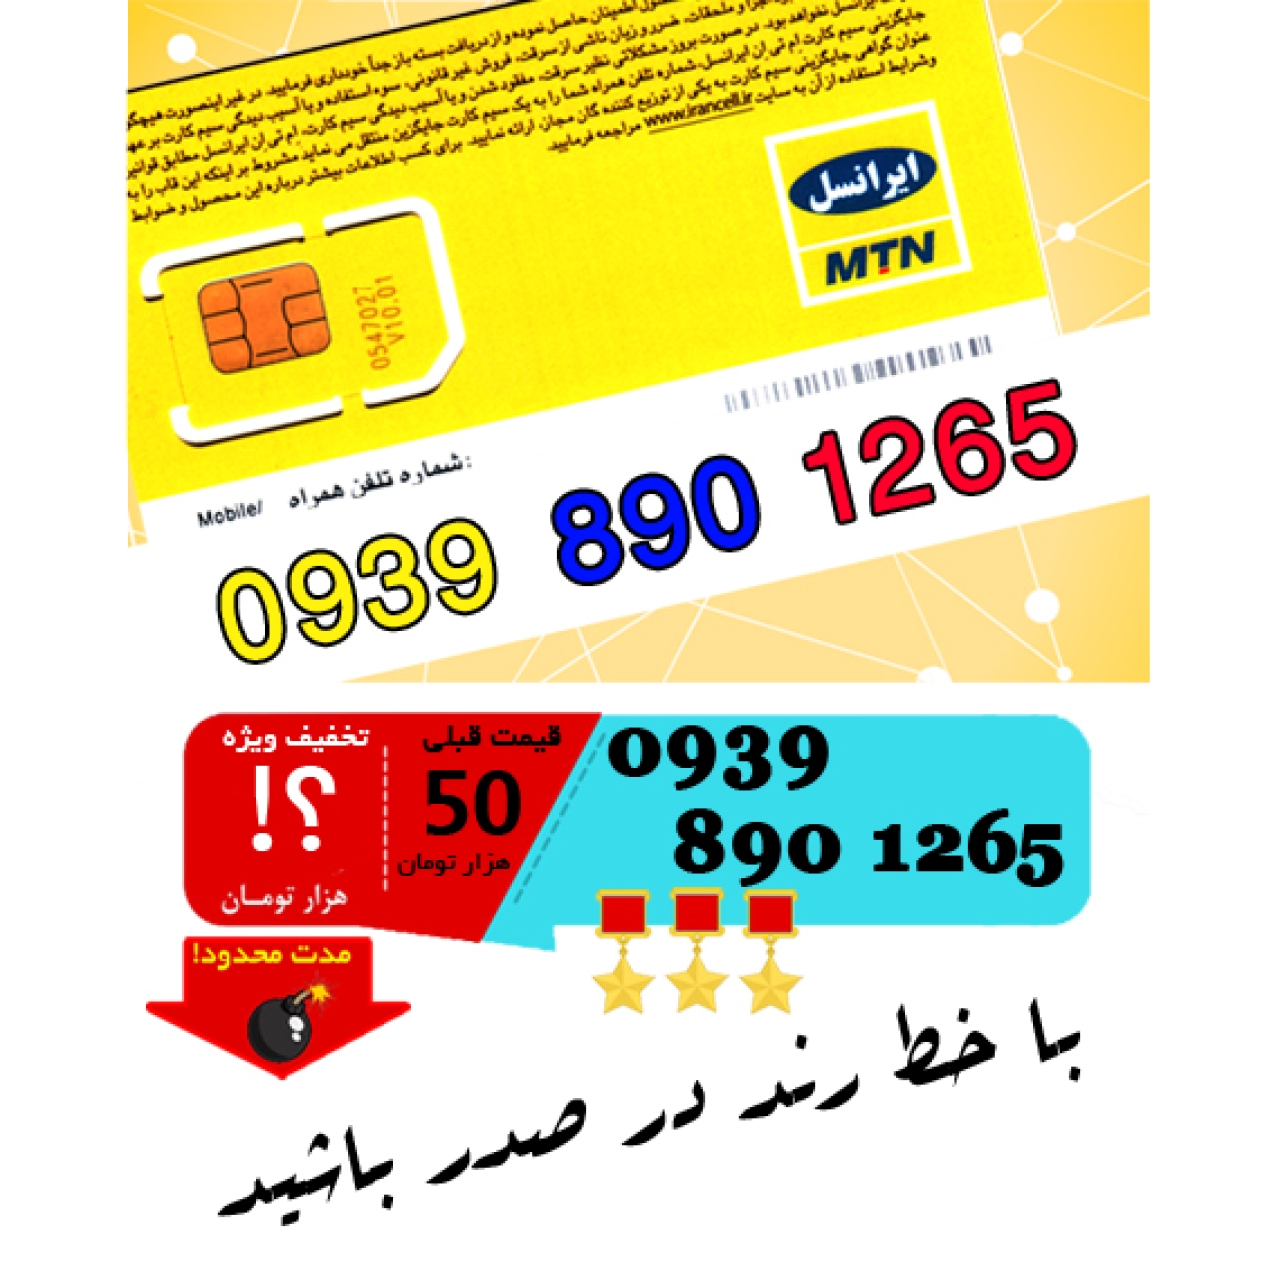 سیم کارت اعتباری ایرانسل 09398901265